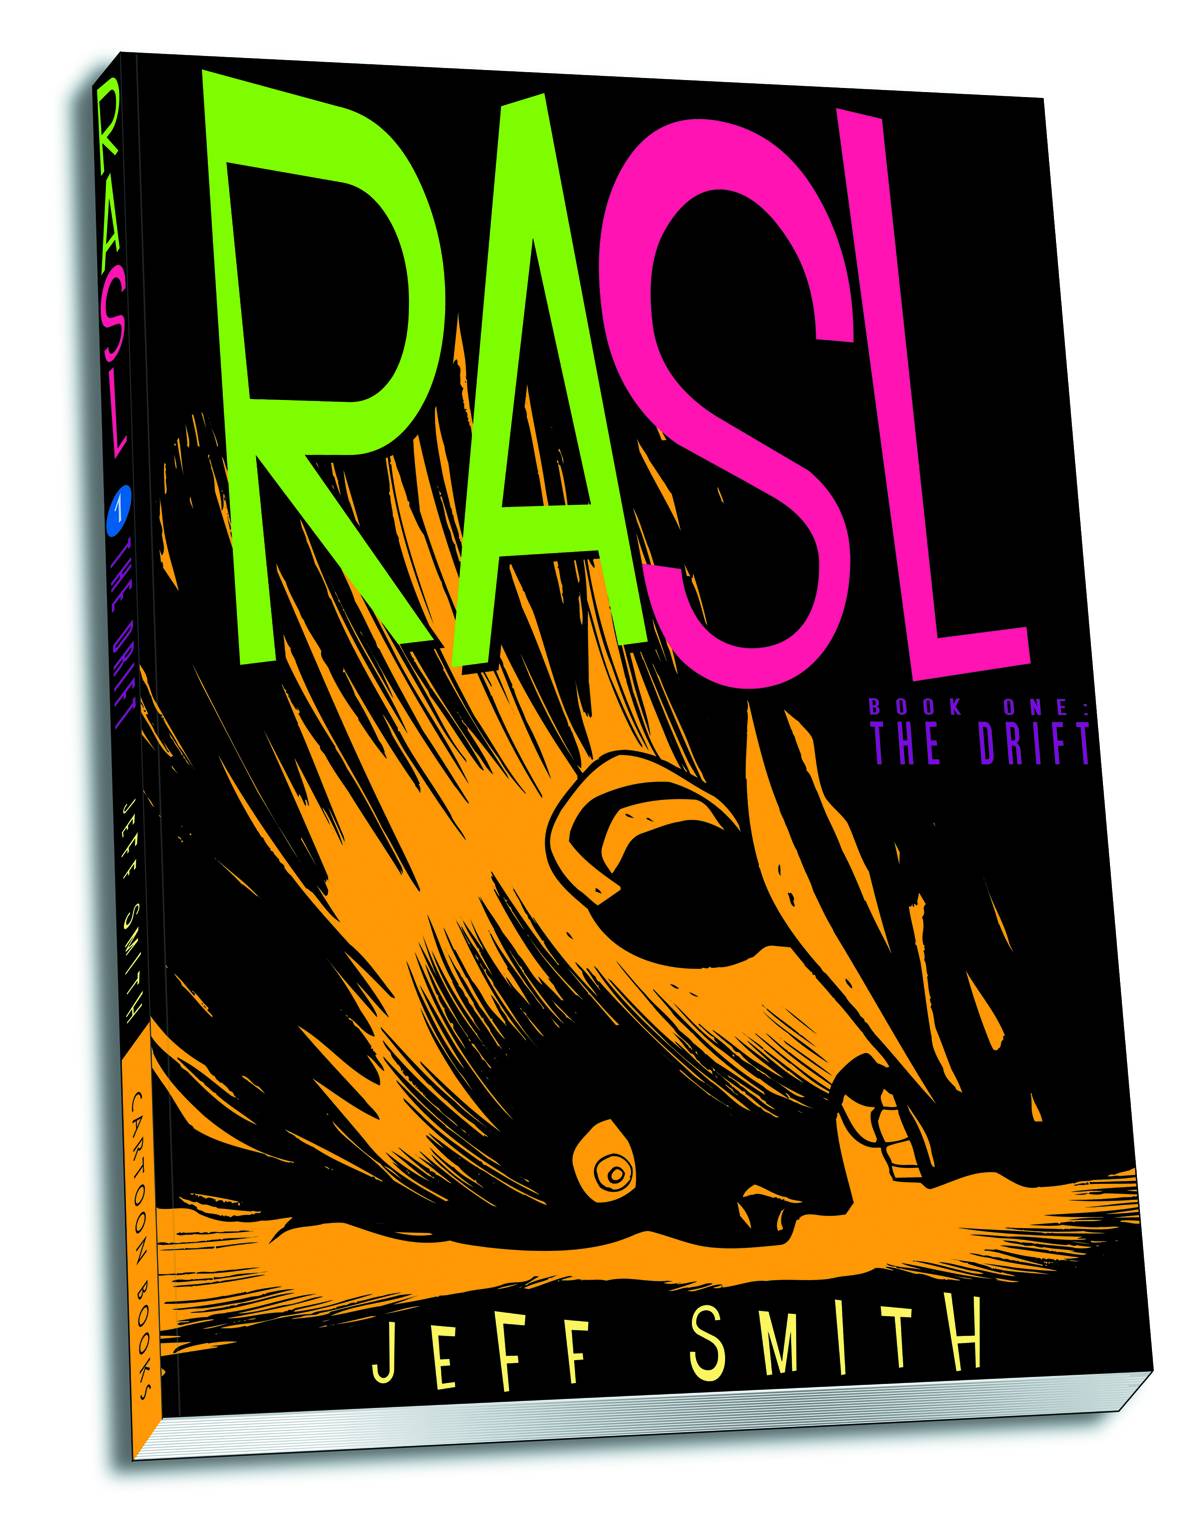 Rasl Graphic Novel Volume 1 Drift